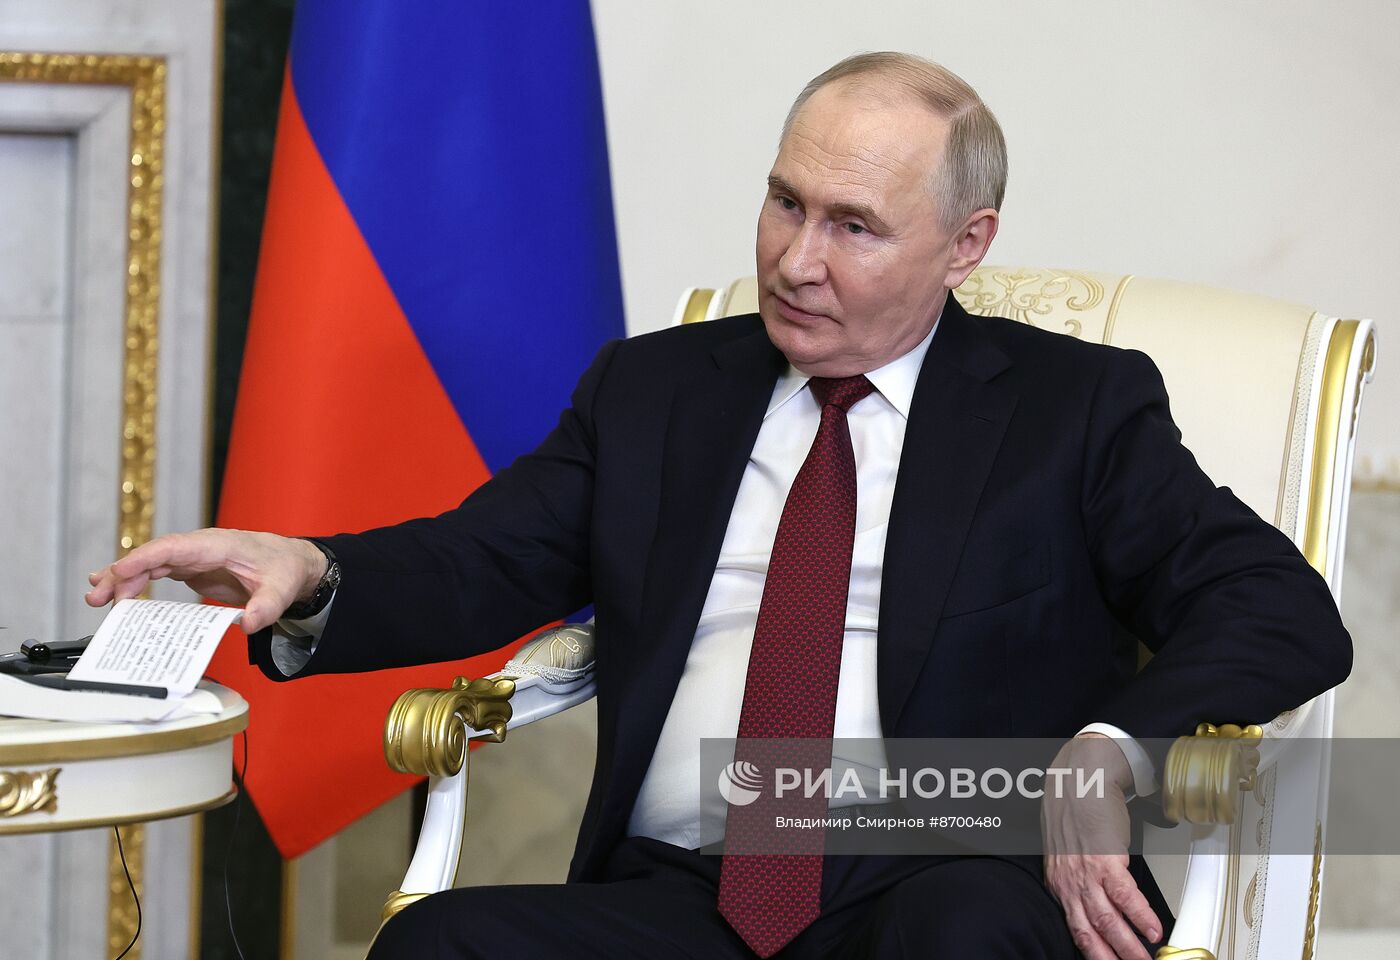 Президент Владимир Путин провел переговоры с президентом Республики Зимбабве Эммерсоном Мнангагвой